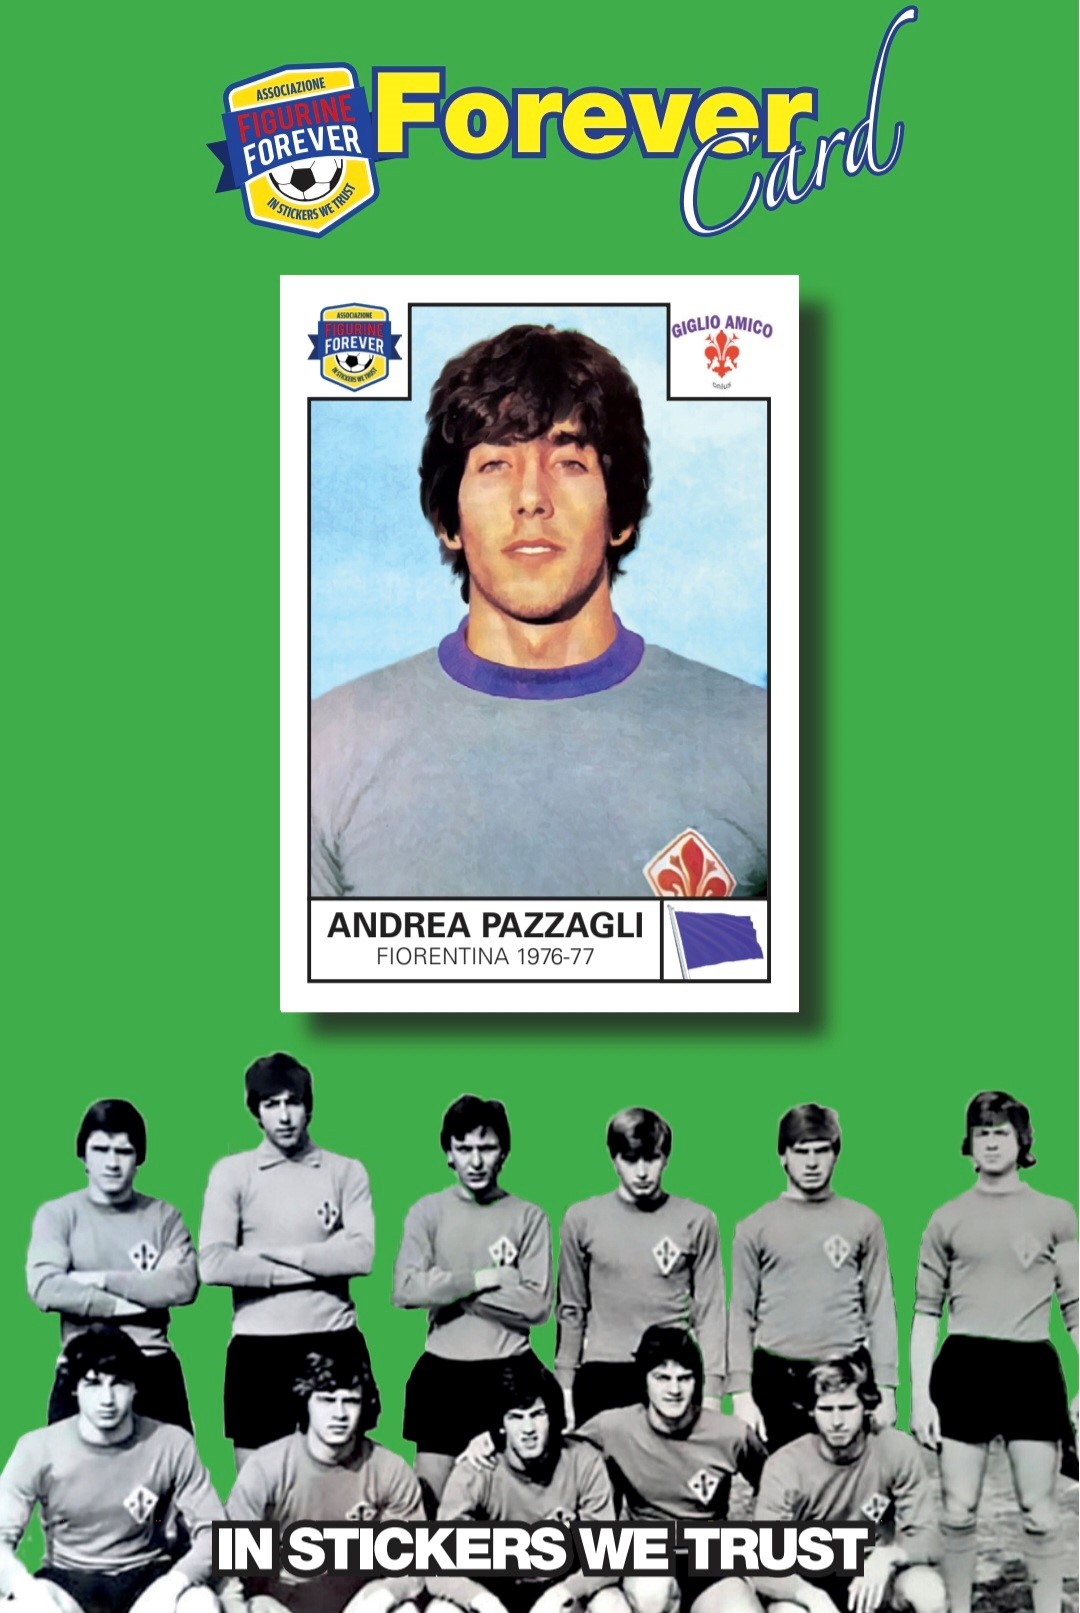 L’Associazione Figurine Forever di Bologna celebra il portiere cantautore Andrea Pazzagli con la Forever Card #24